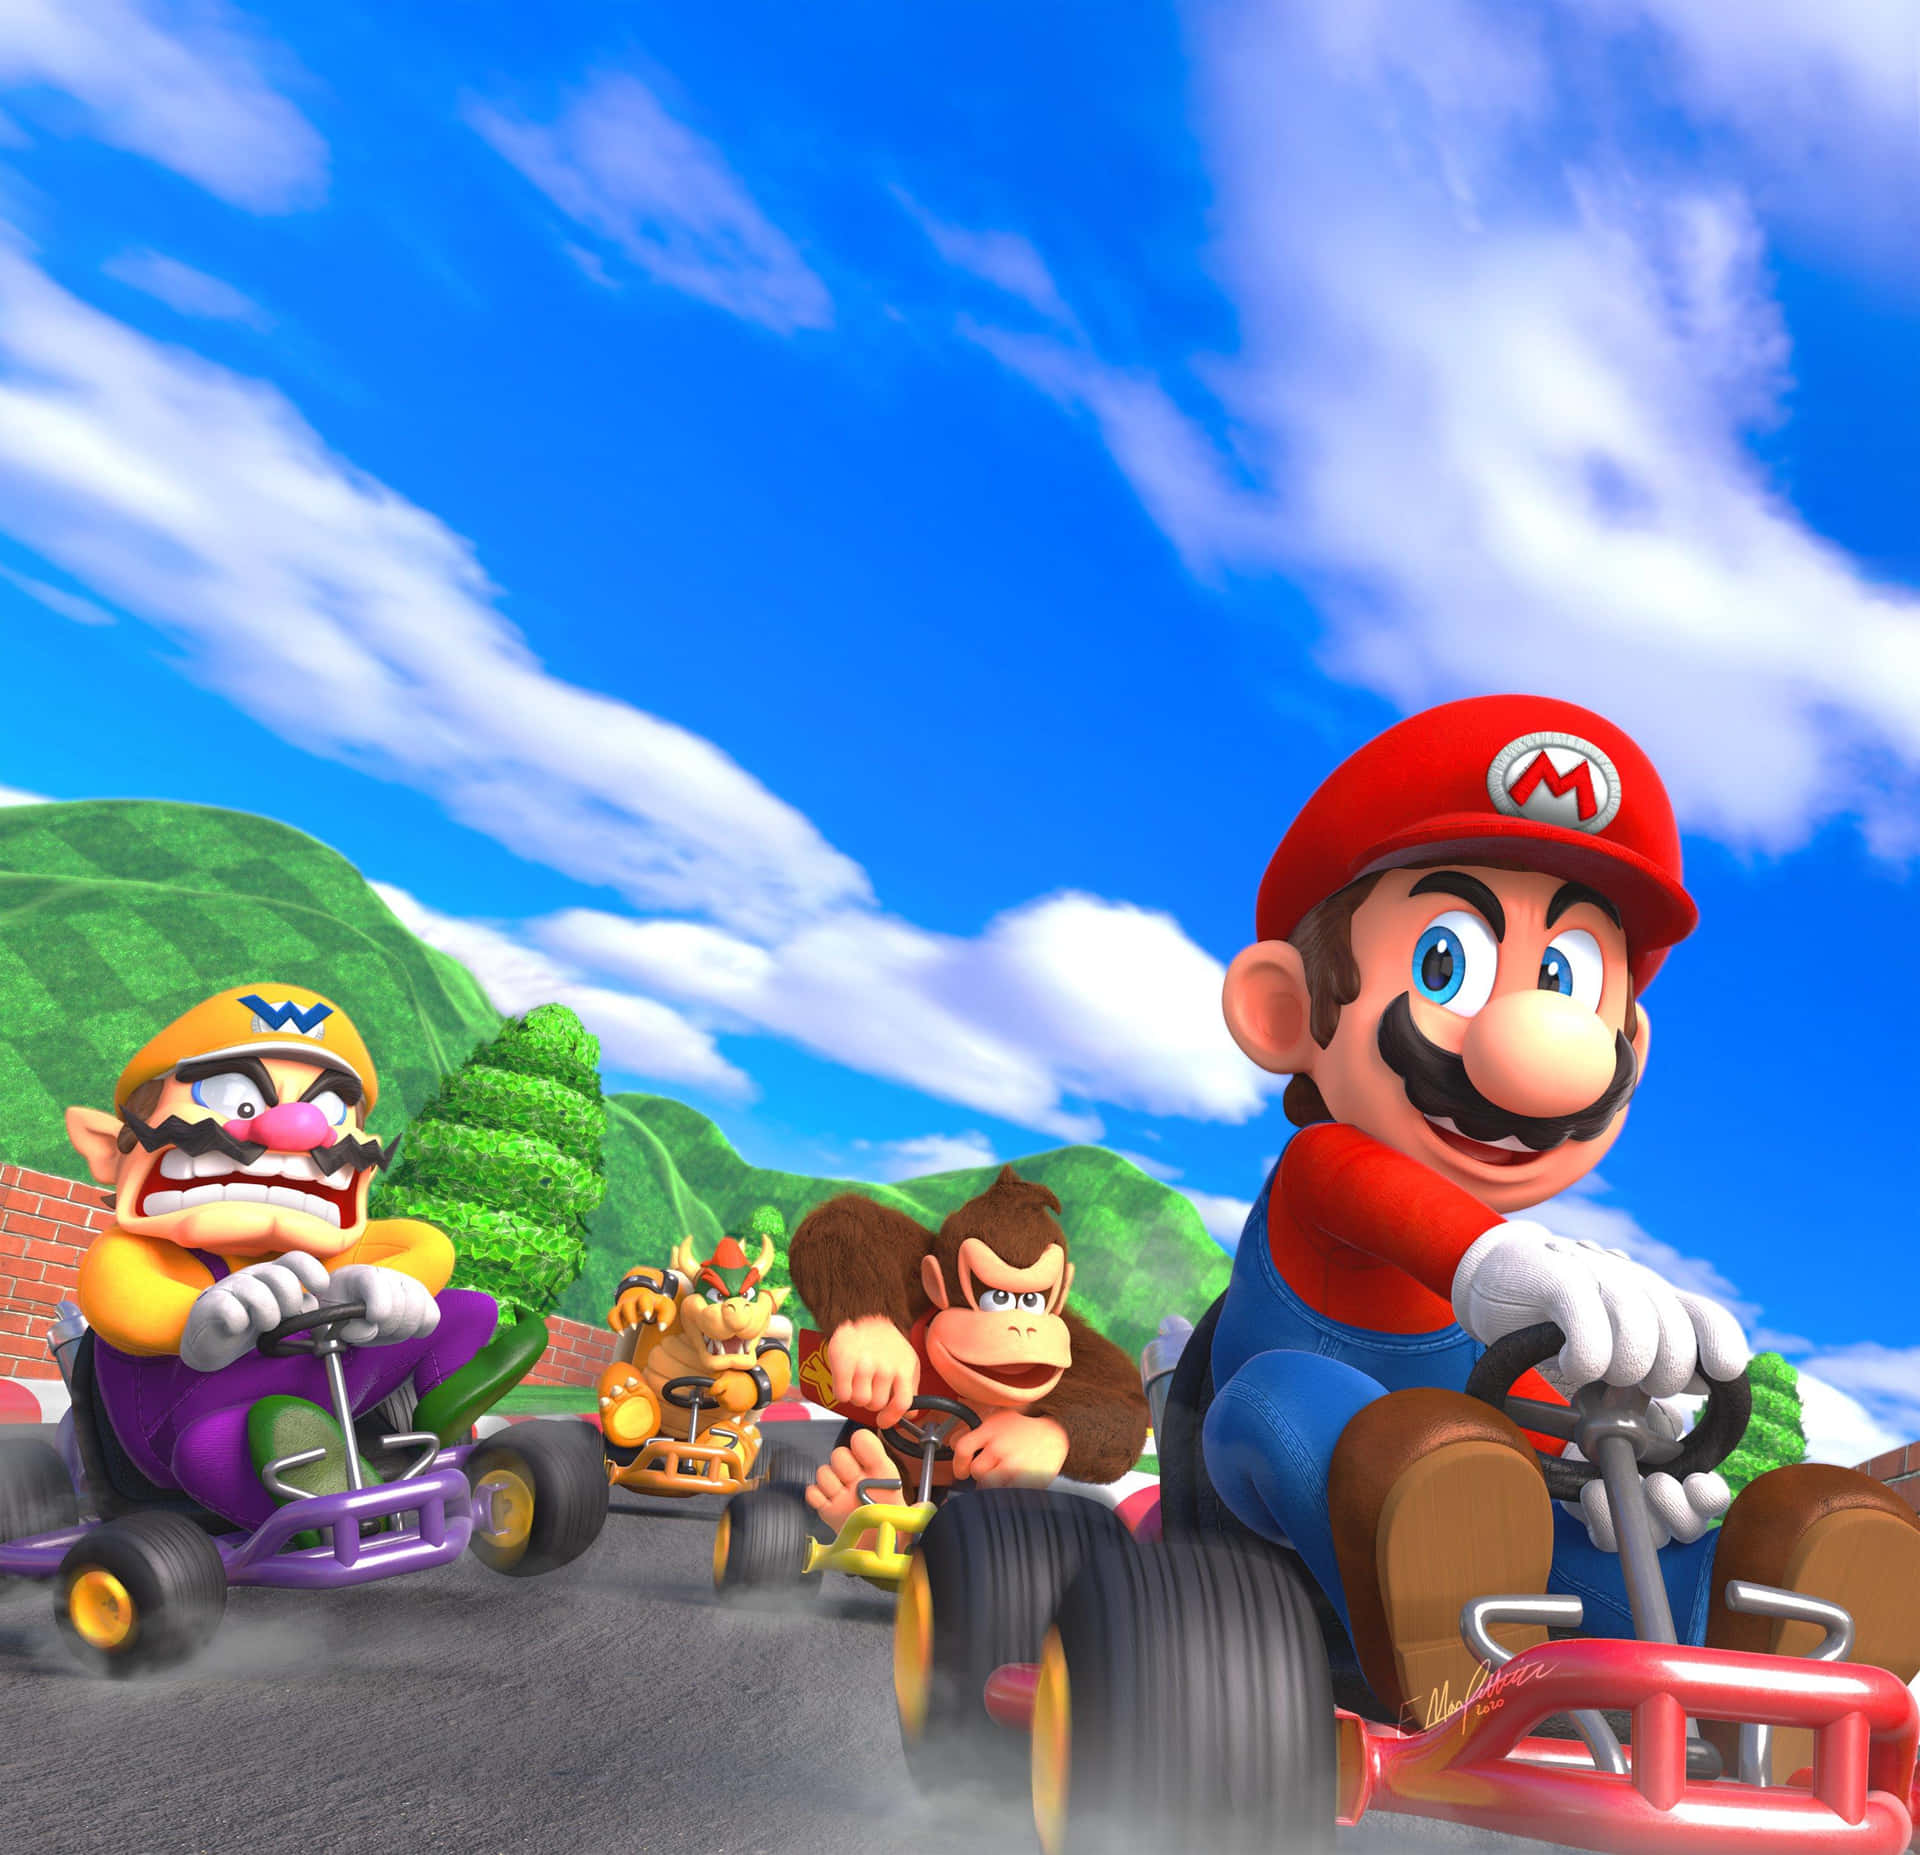 Preparese Para Correr Em Mario Kart!